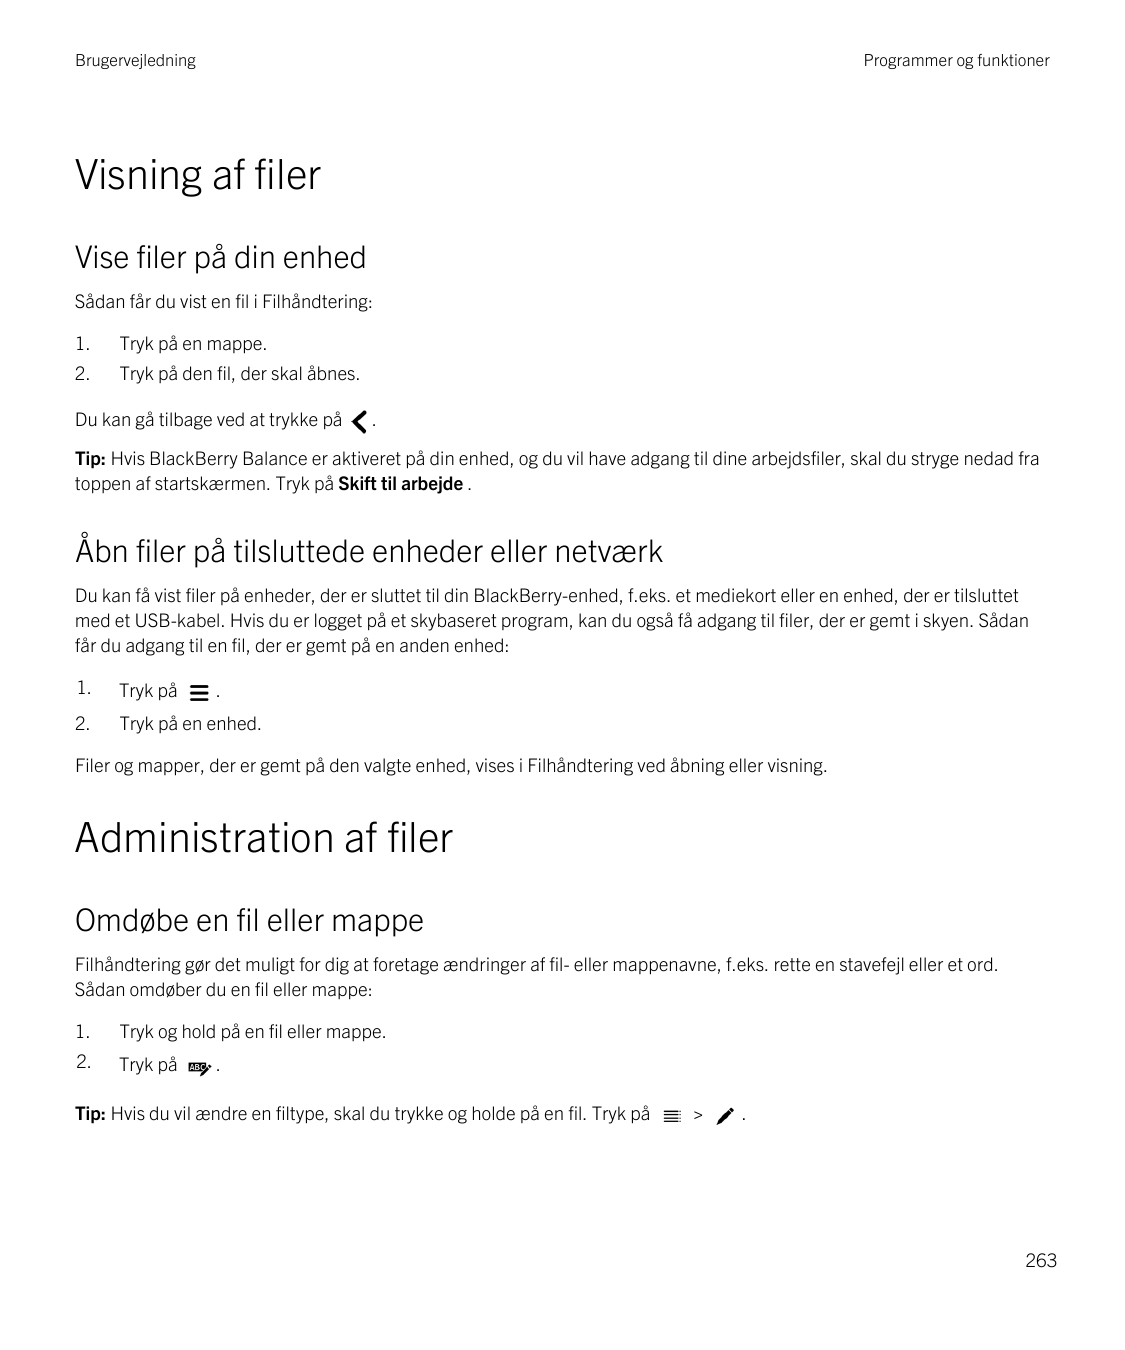 BrugervejledningProgrammer og funktionerVisning af filerVise filer på din enhedSådan får du vist en fil i Filhåndtering:1.Tryk p